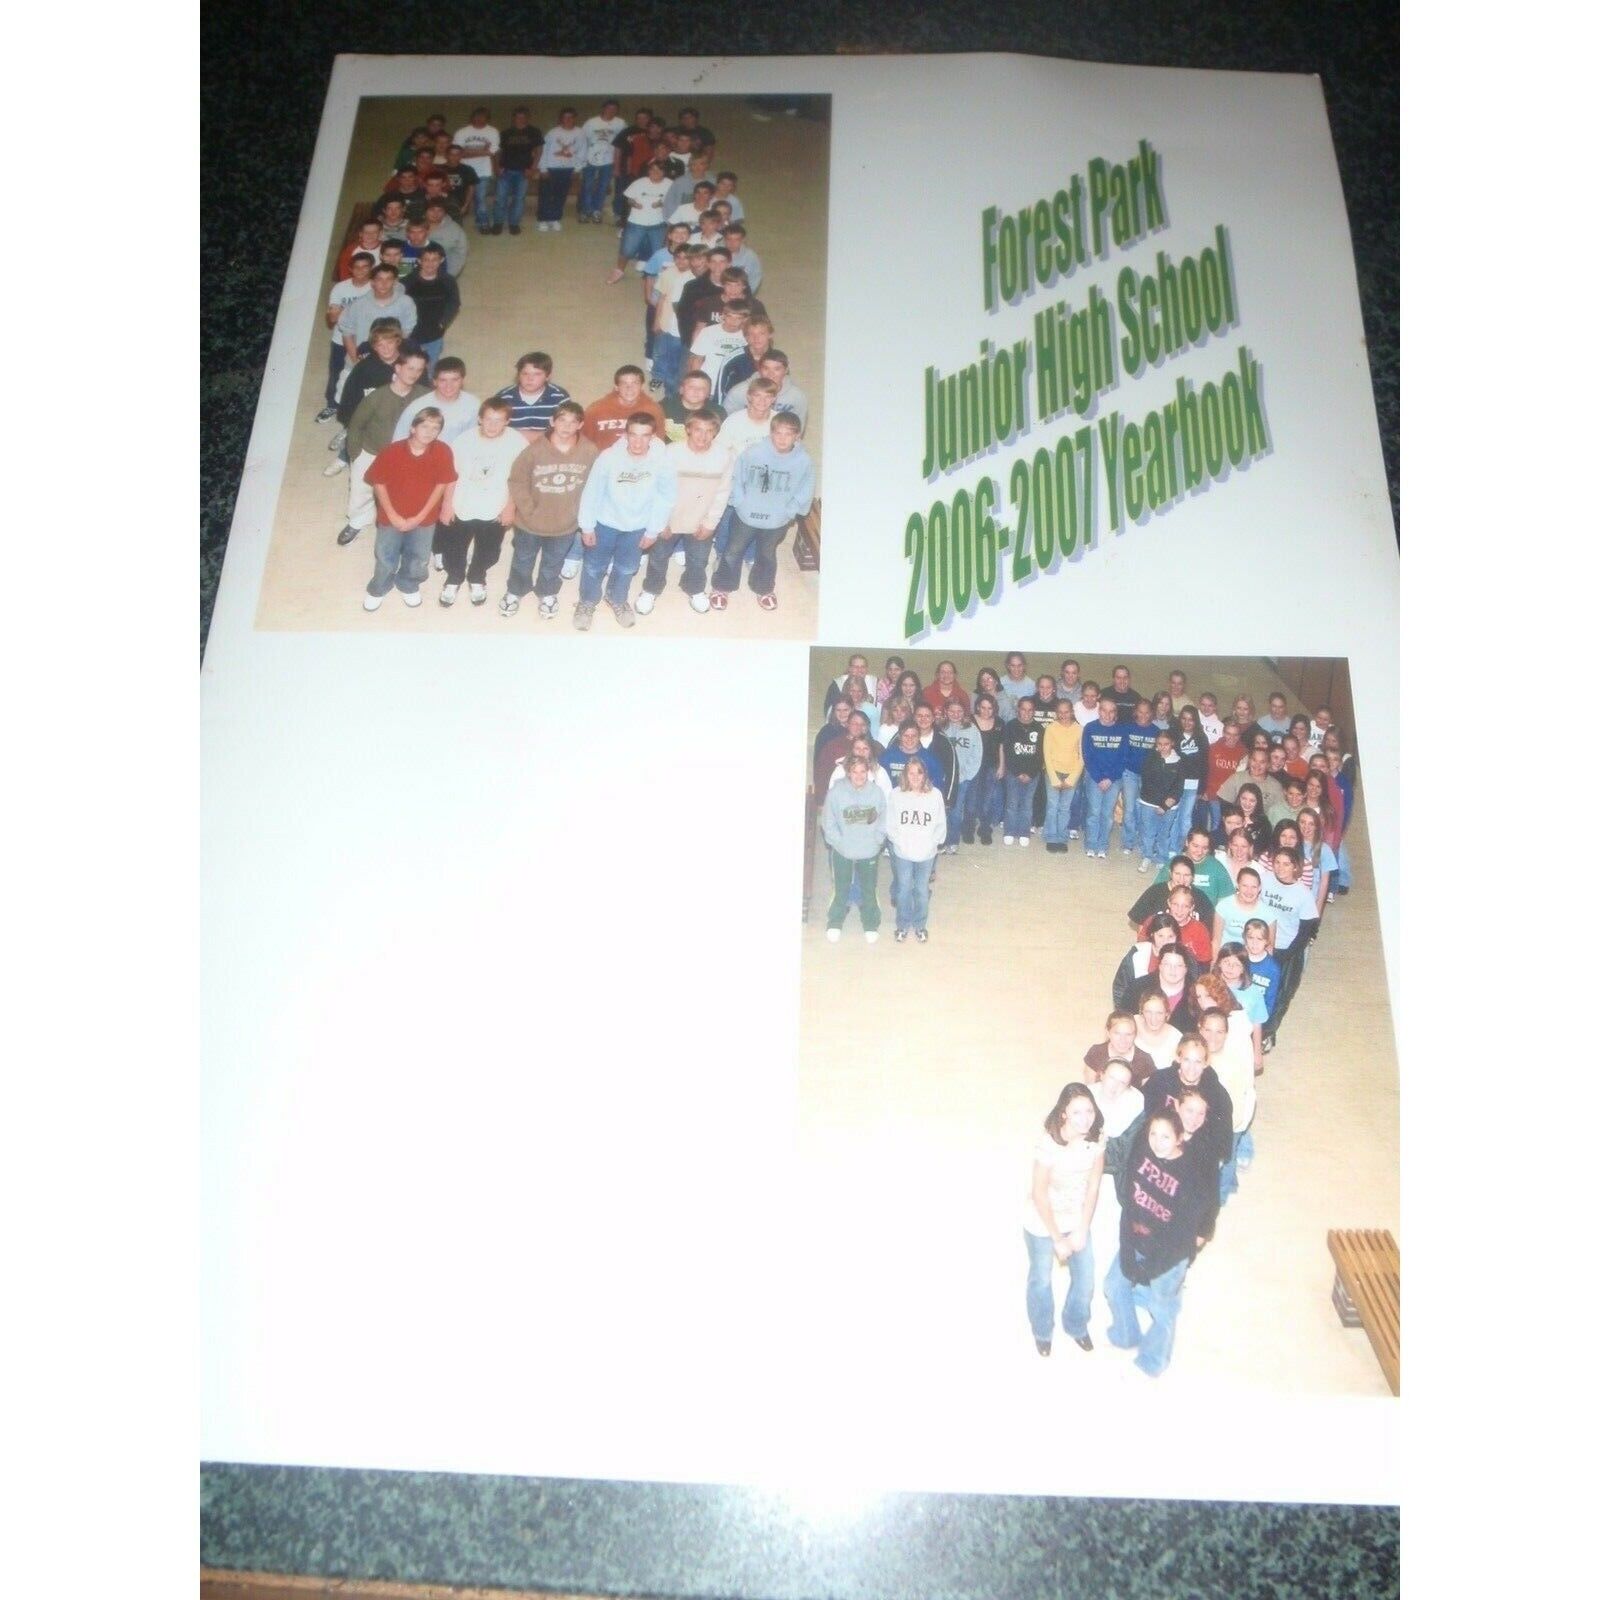 2006 2007 Forest Park Junior High School Ferdinand IN Indiana Yearbook Year Book